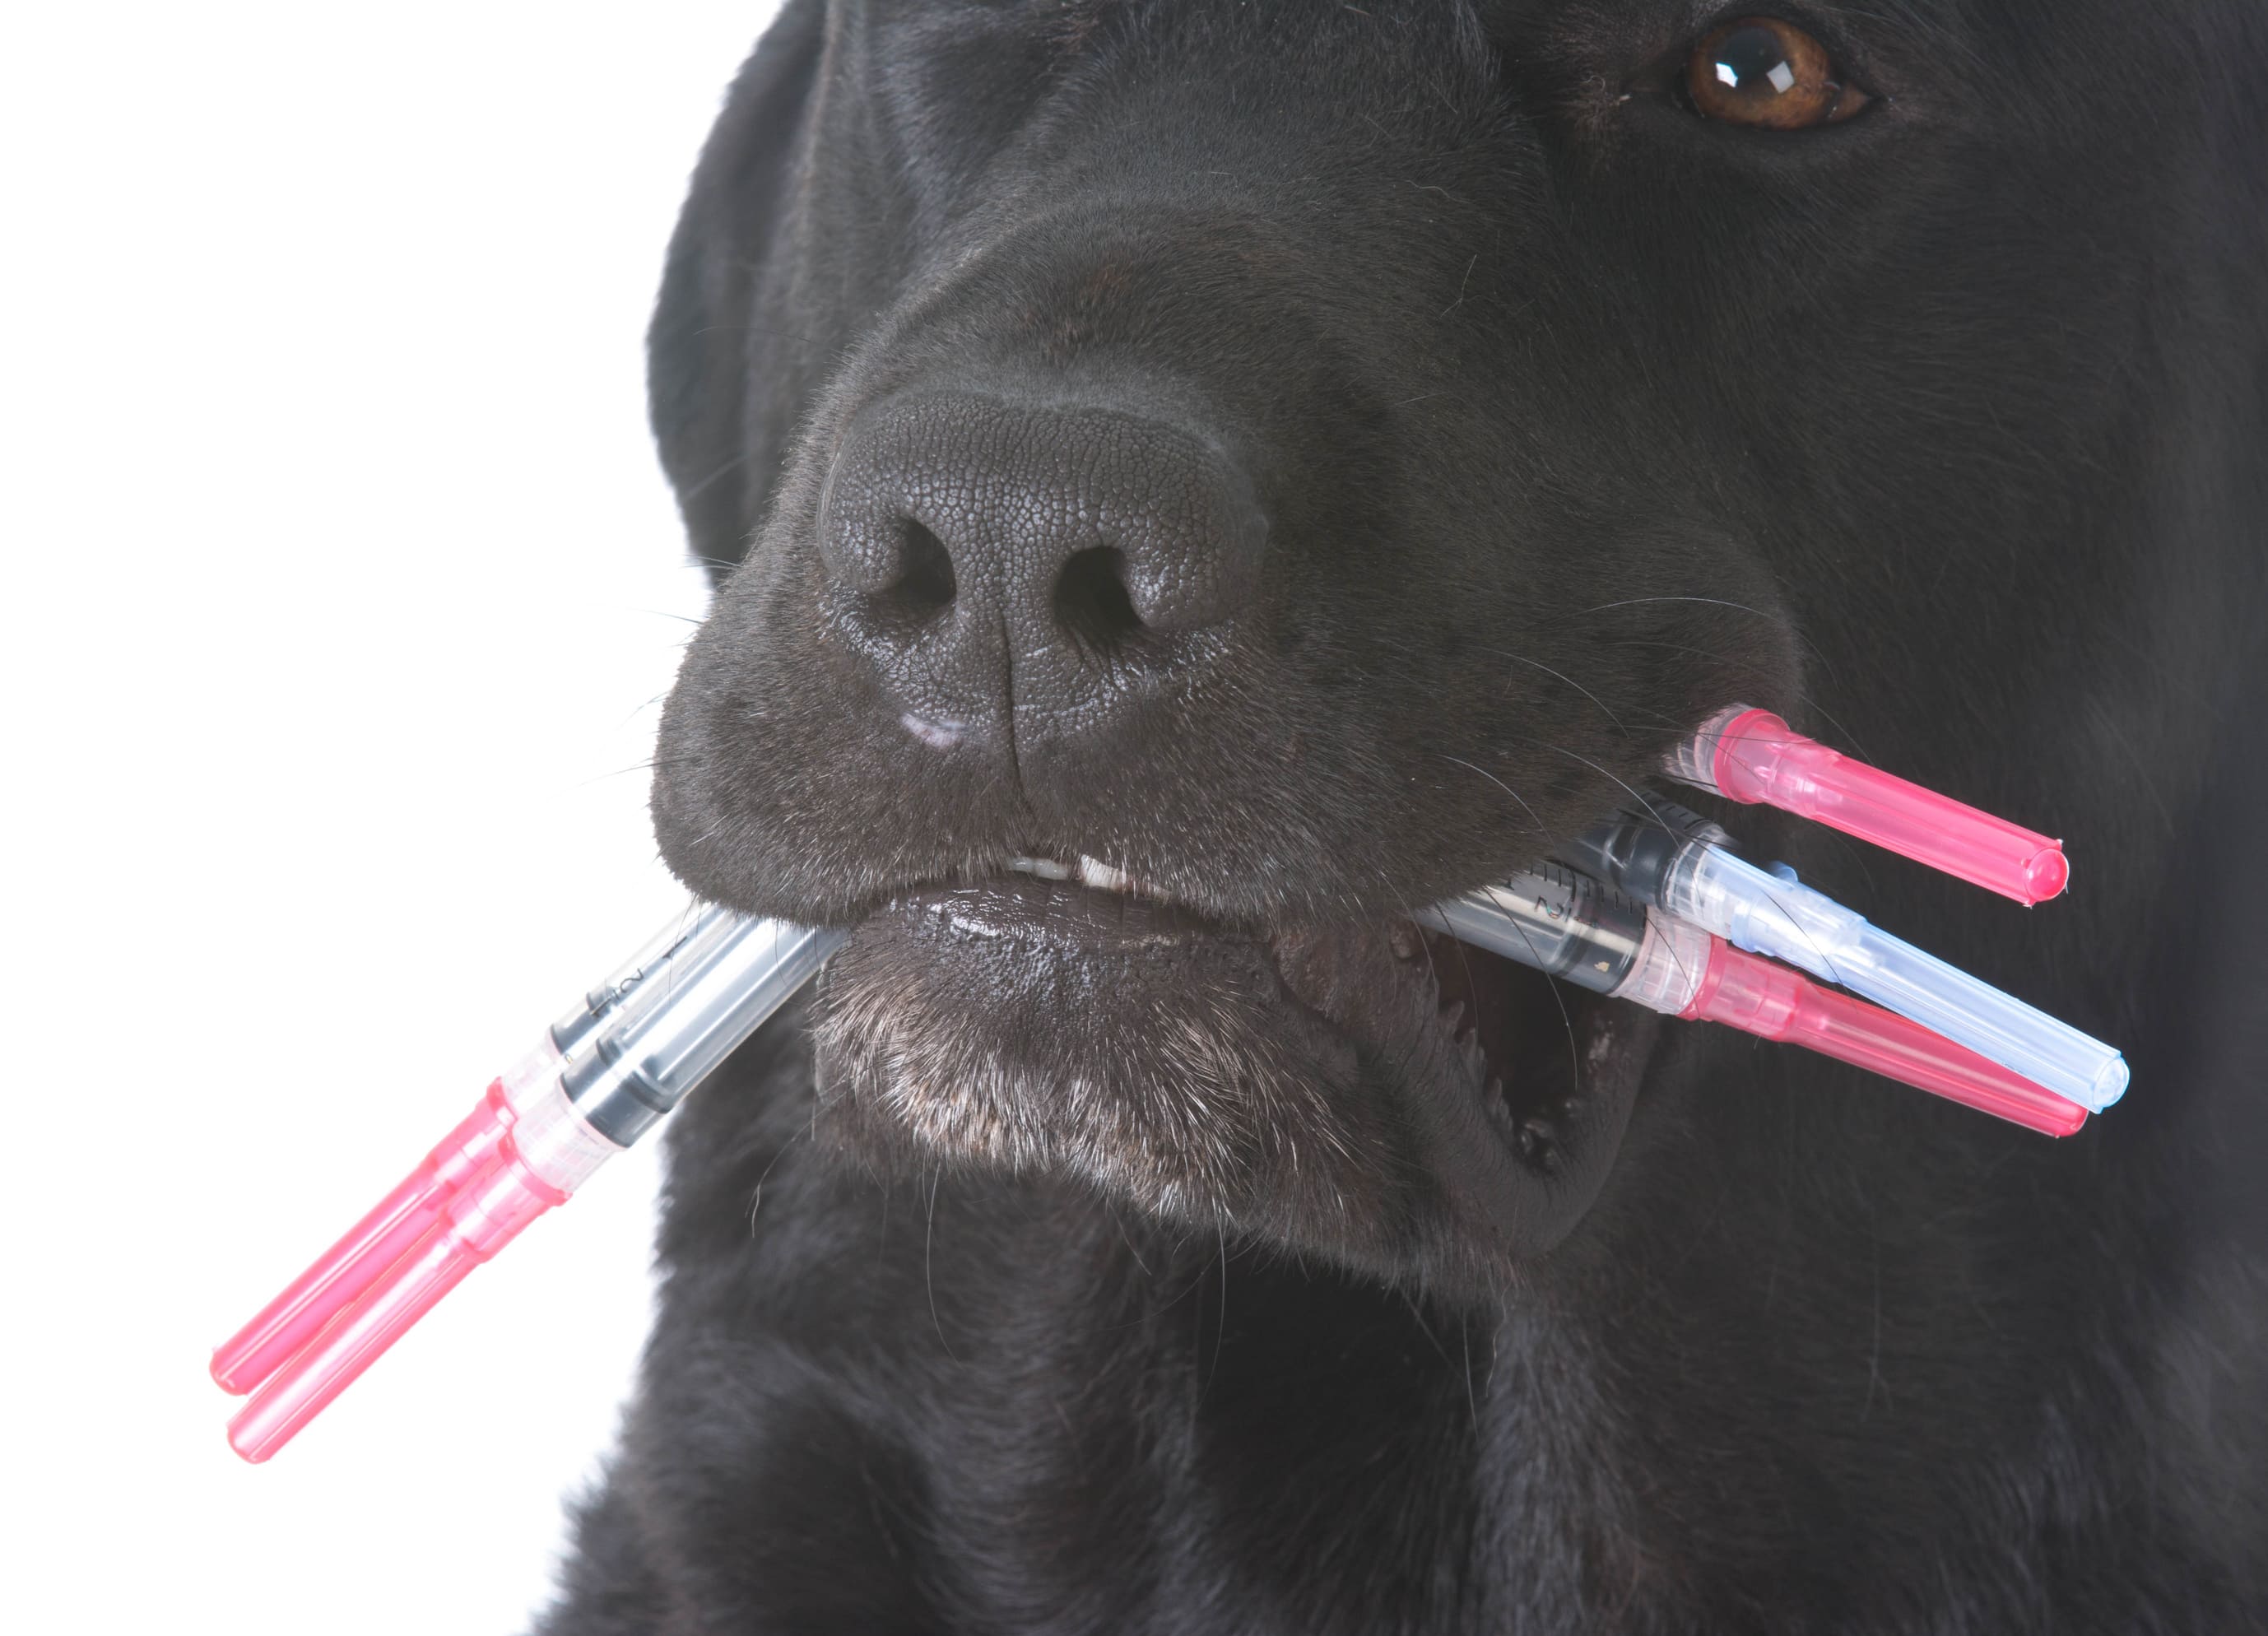 Impfung beim Hund, schwarzer Labrador